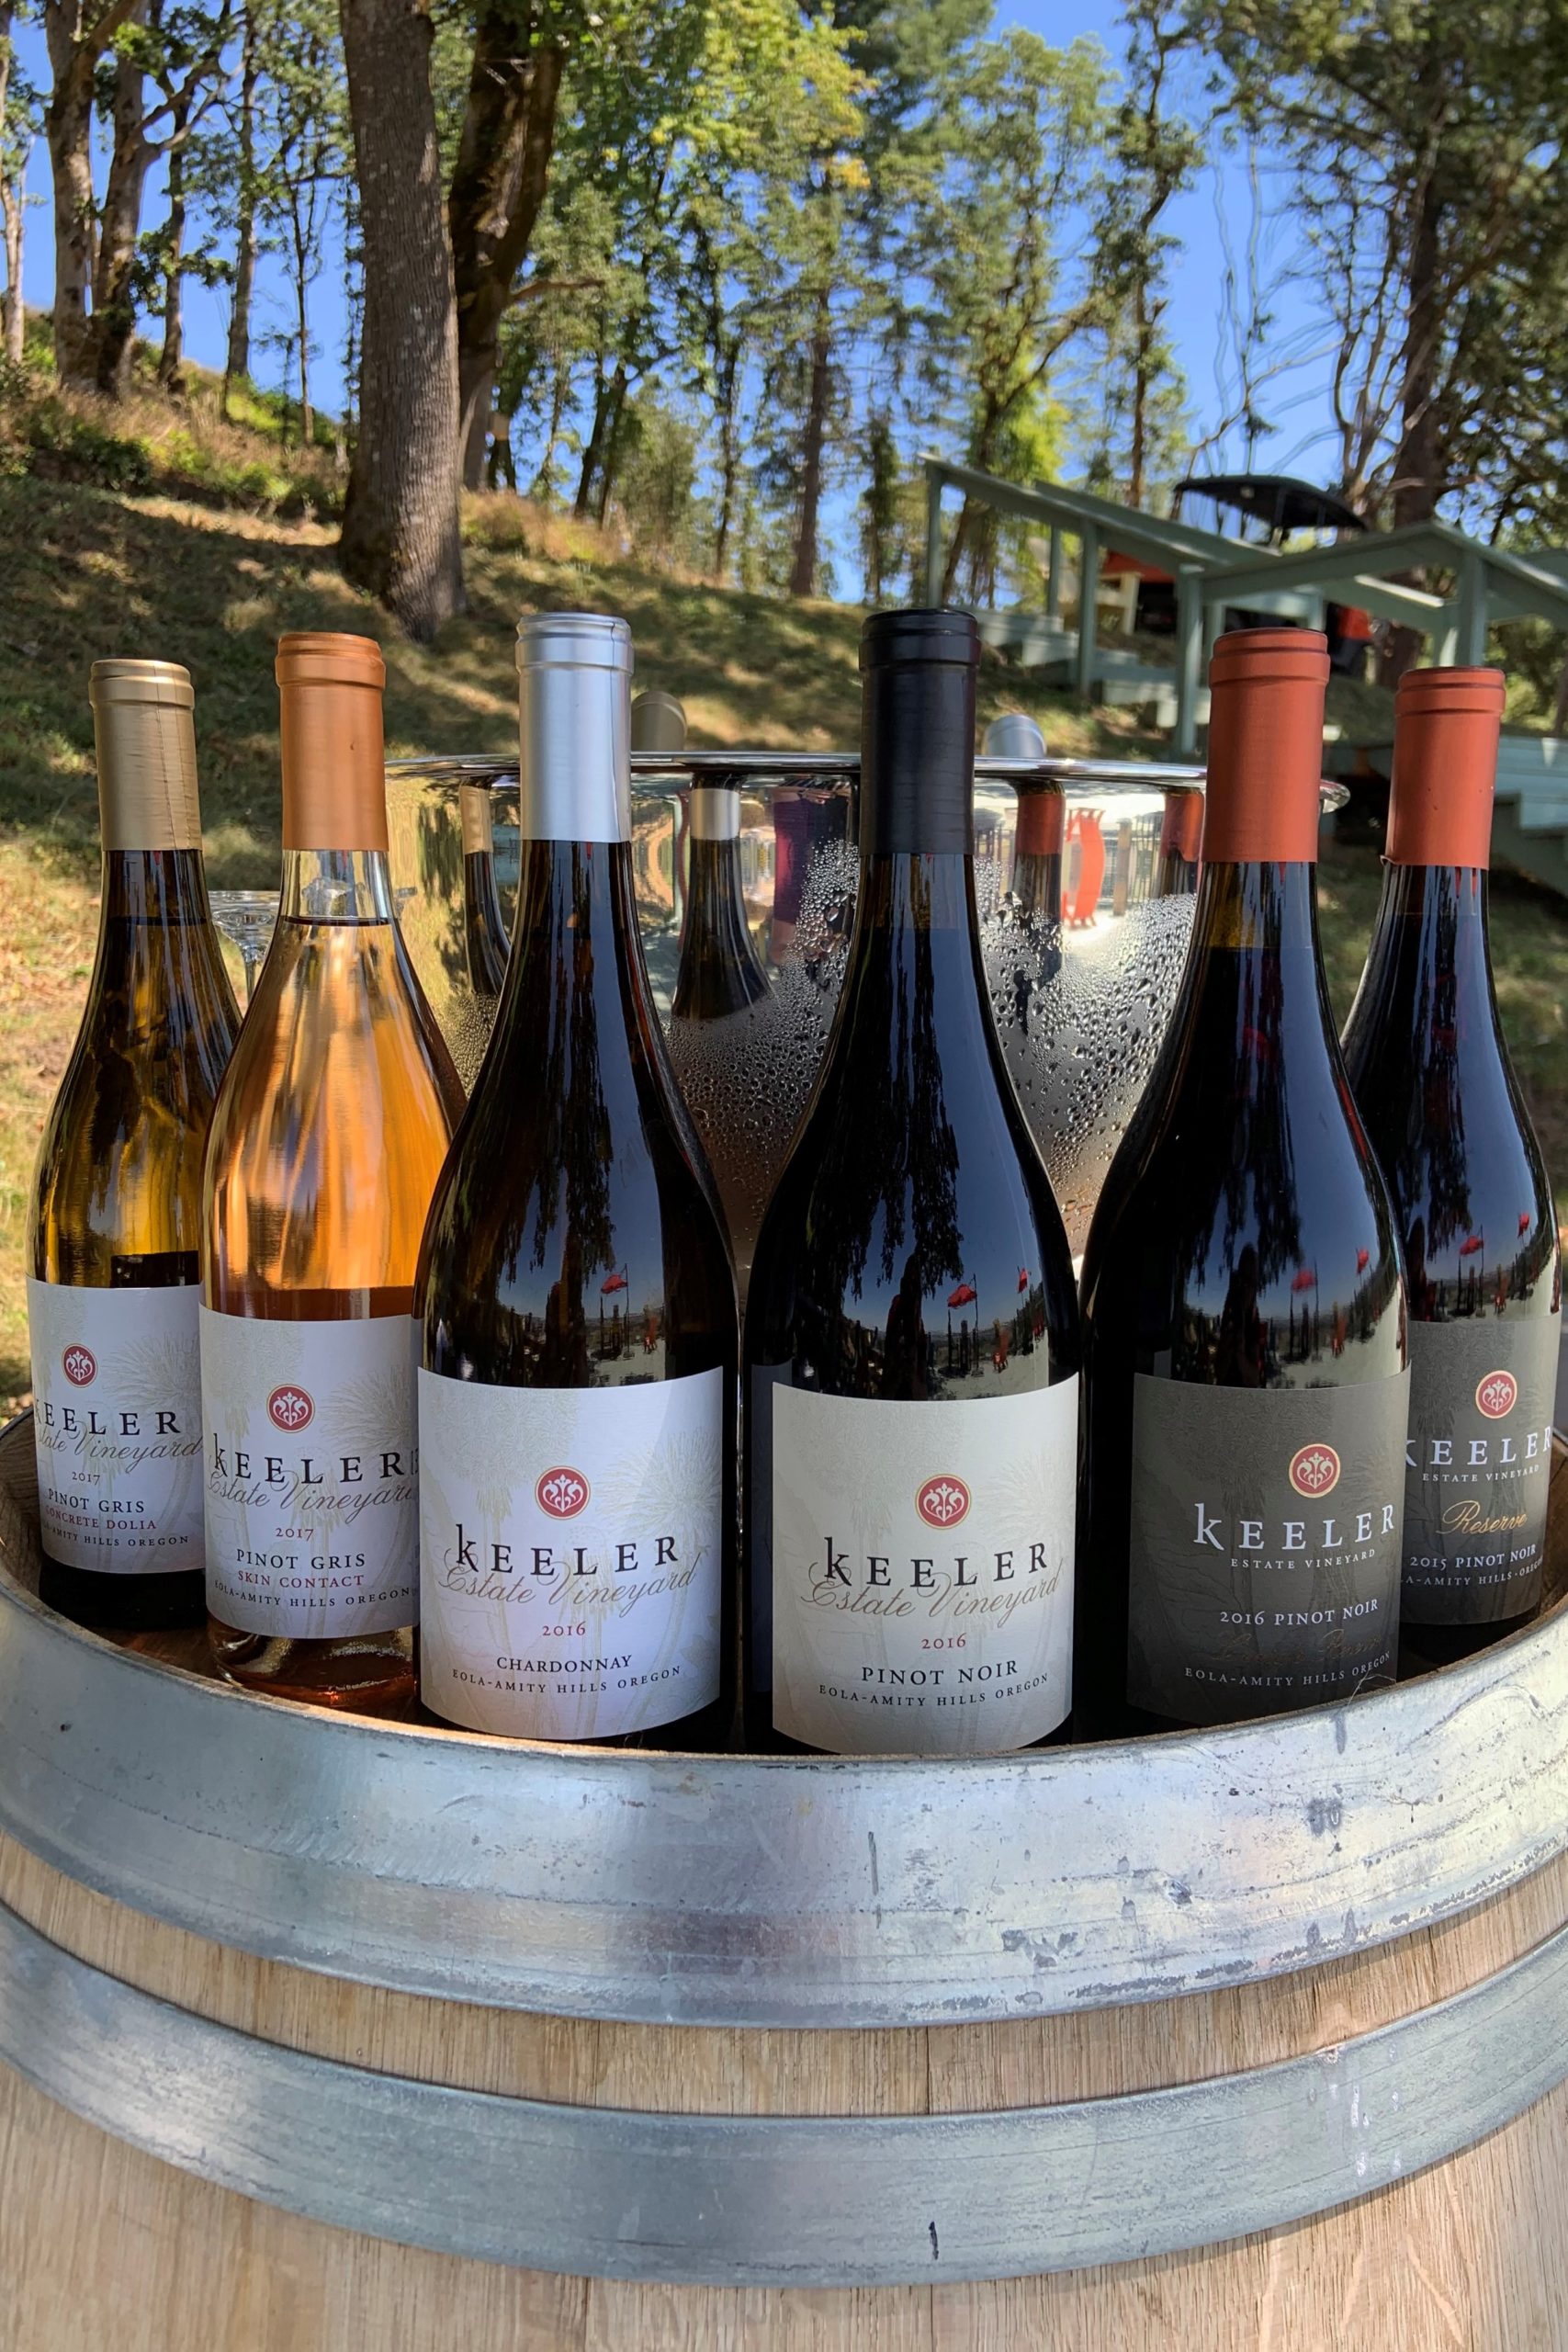 Keeler Estate Vineyard & Winery